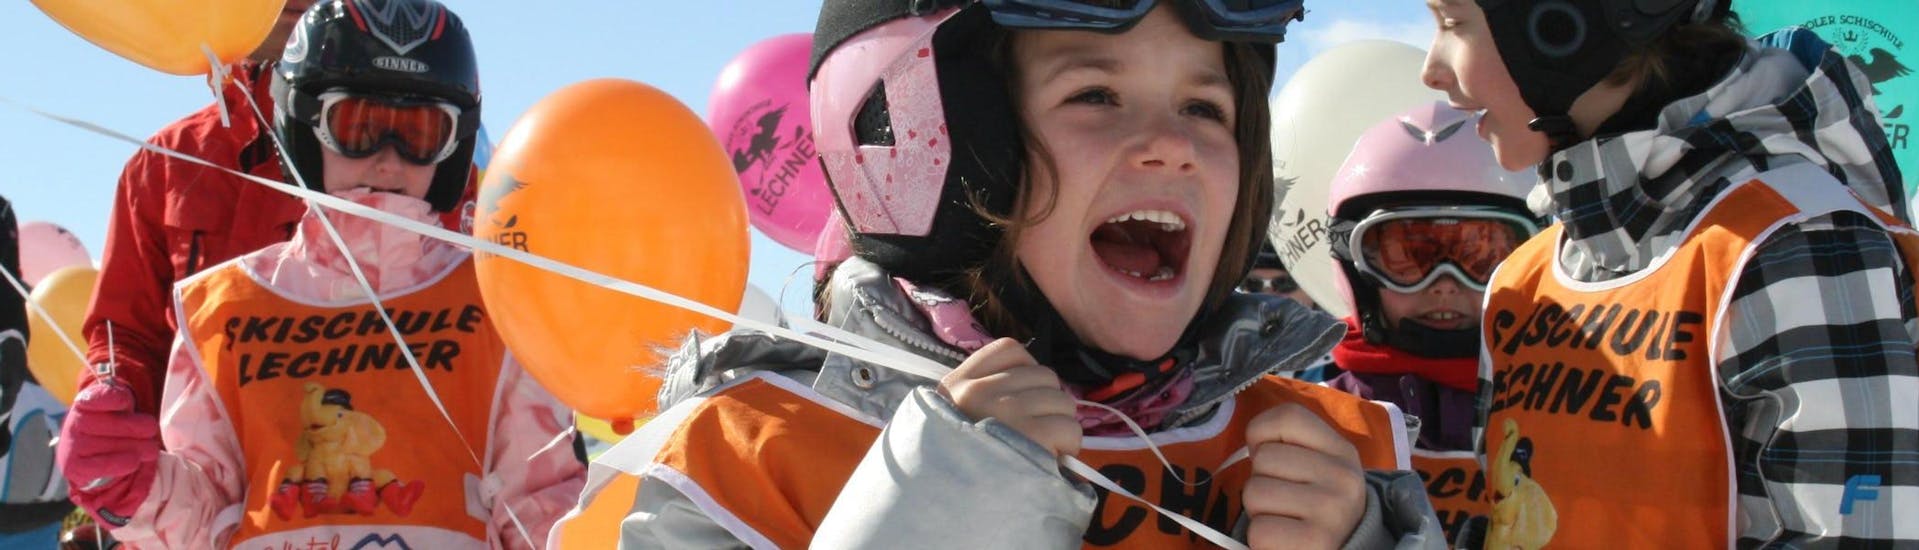 Cours de ski Enfants dès 5 ans - Premier cours.